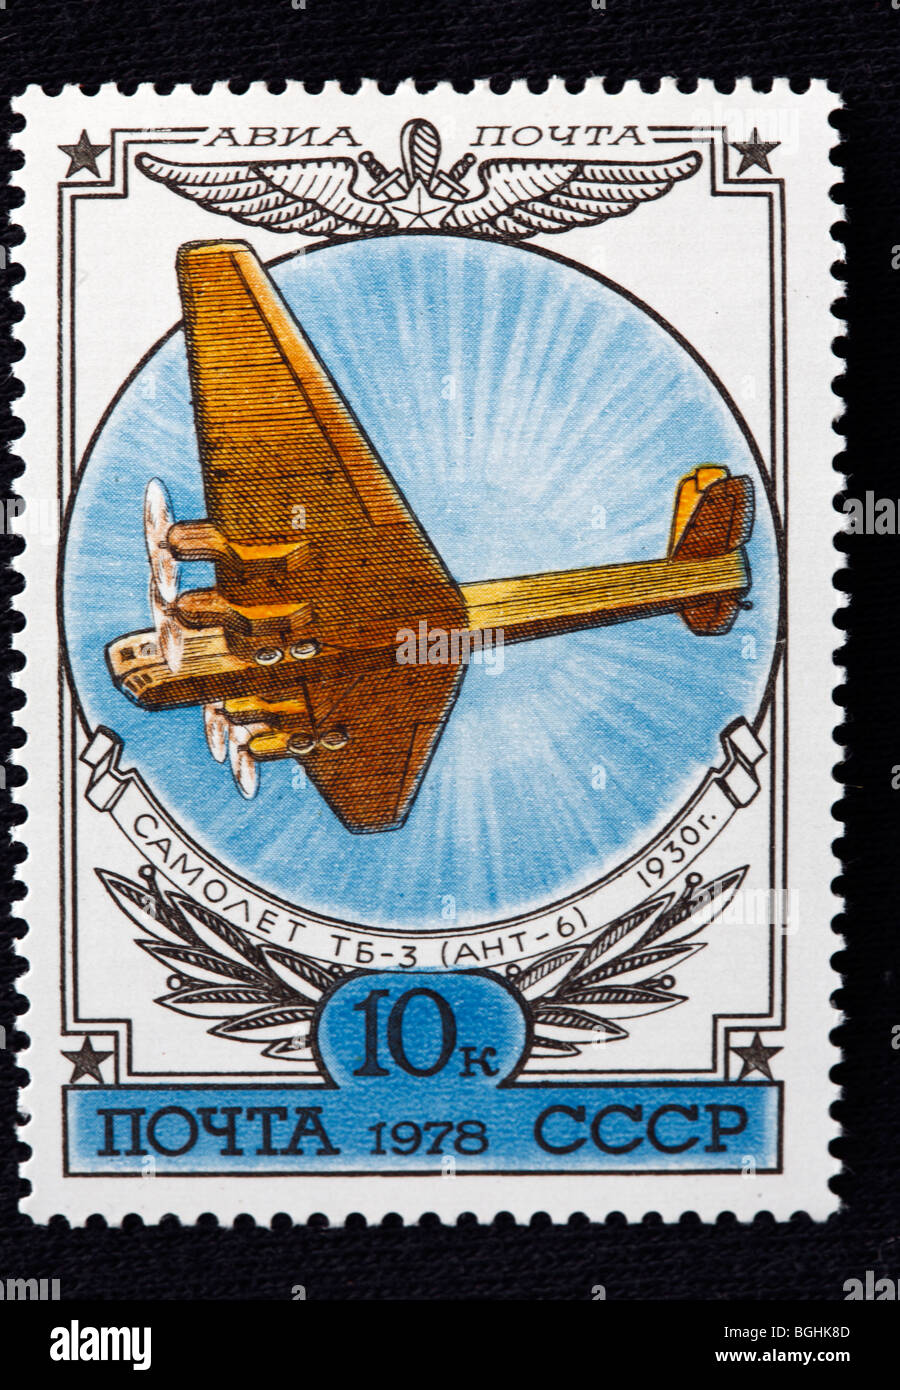 Historia de la aviación, avión ruso TB-3 (1930), sello, URSS, 1978 Foto de stock